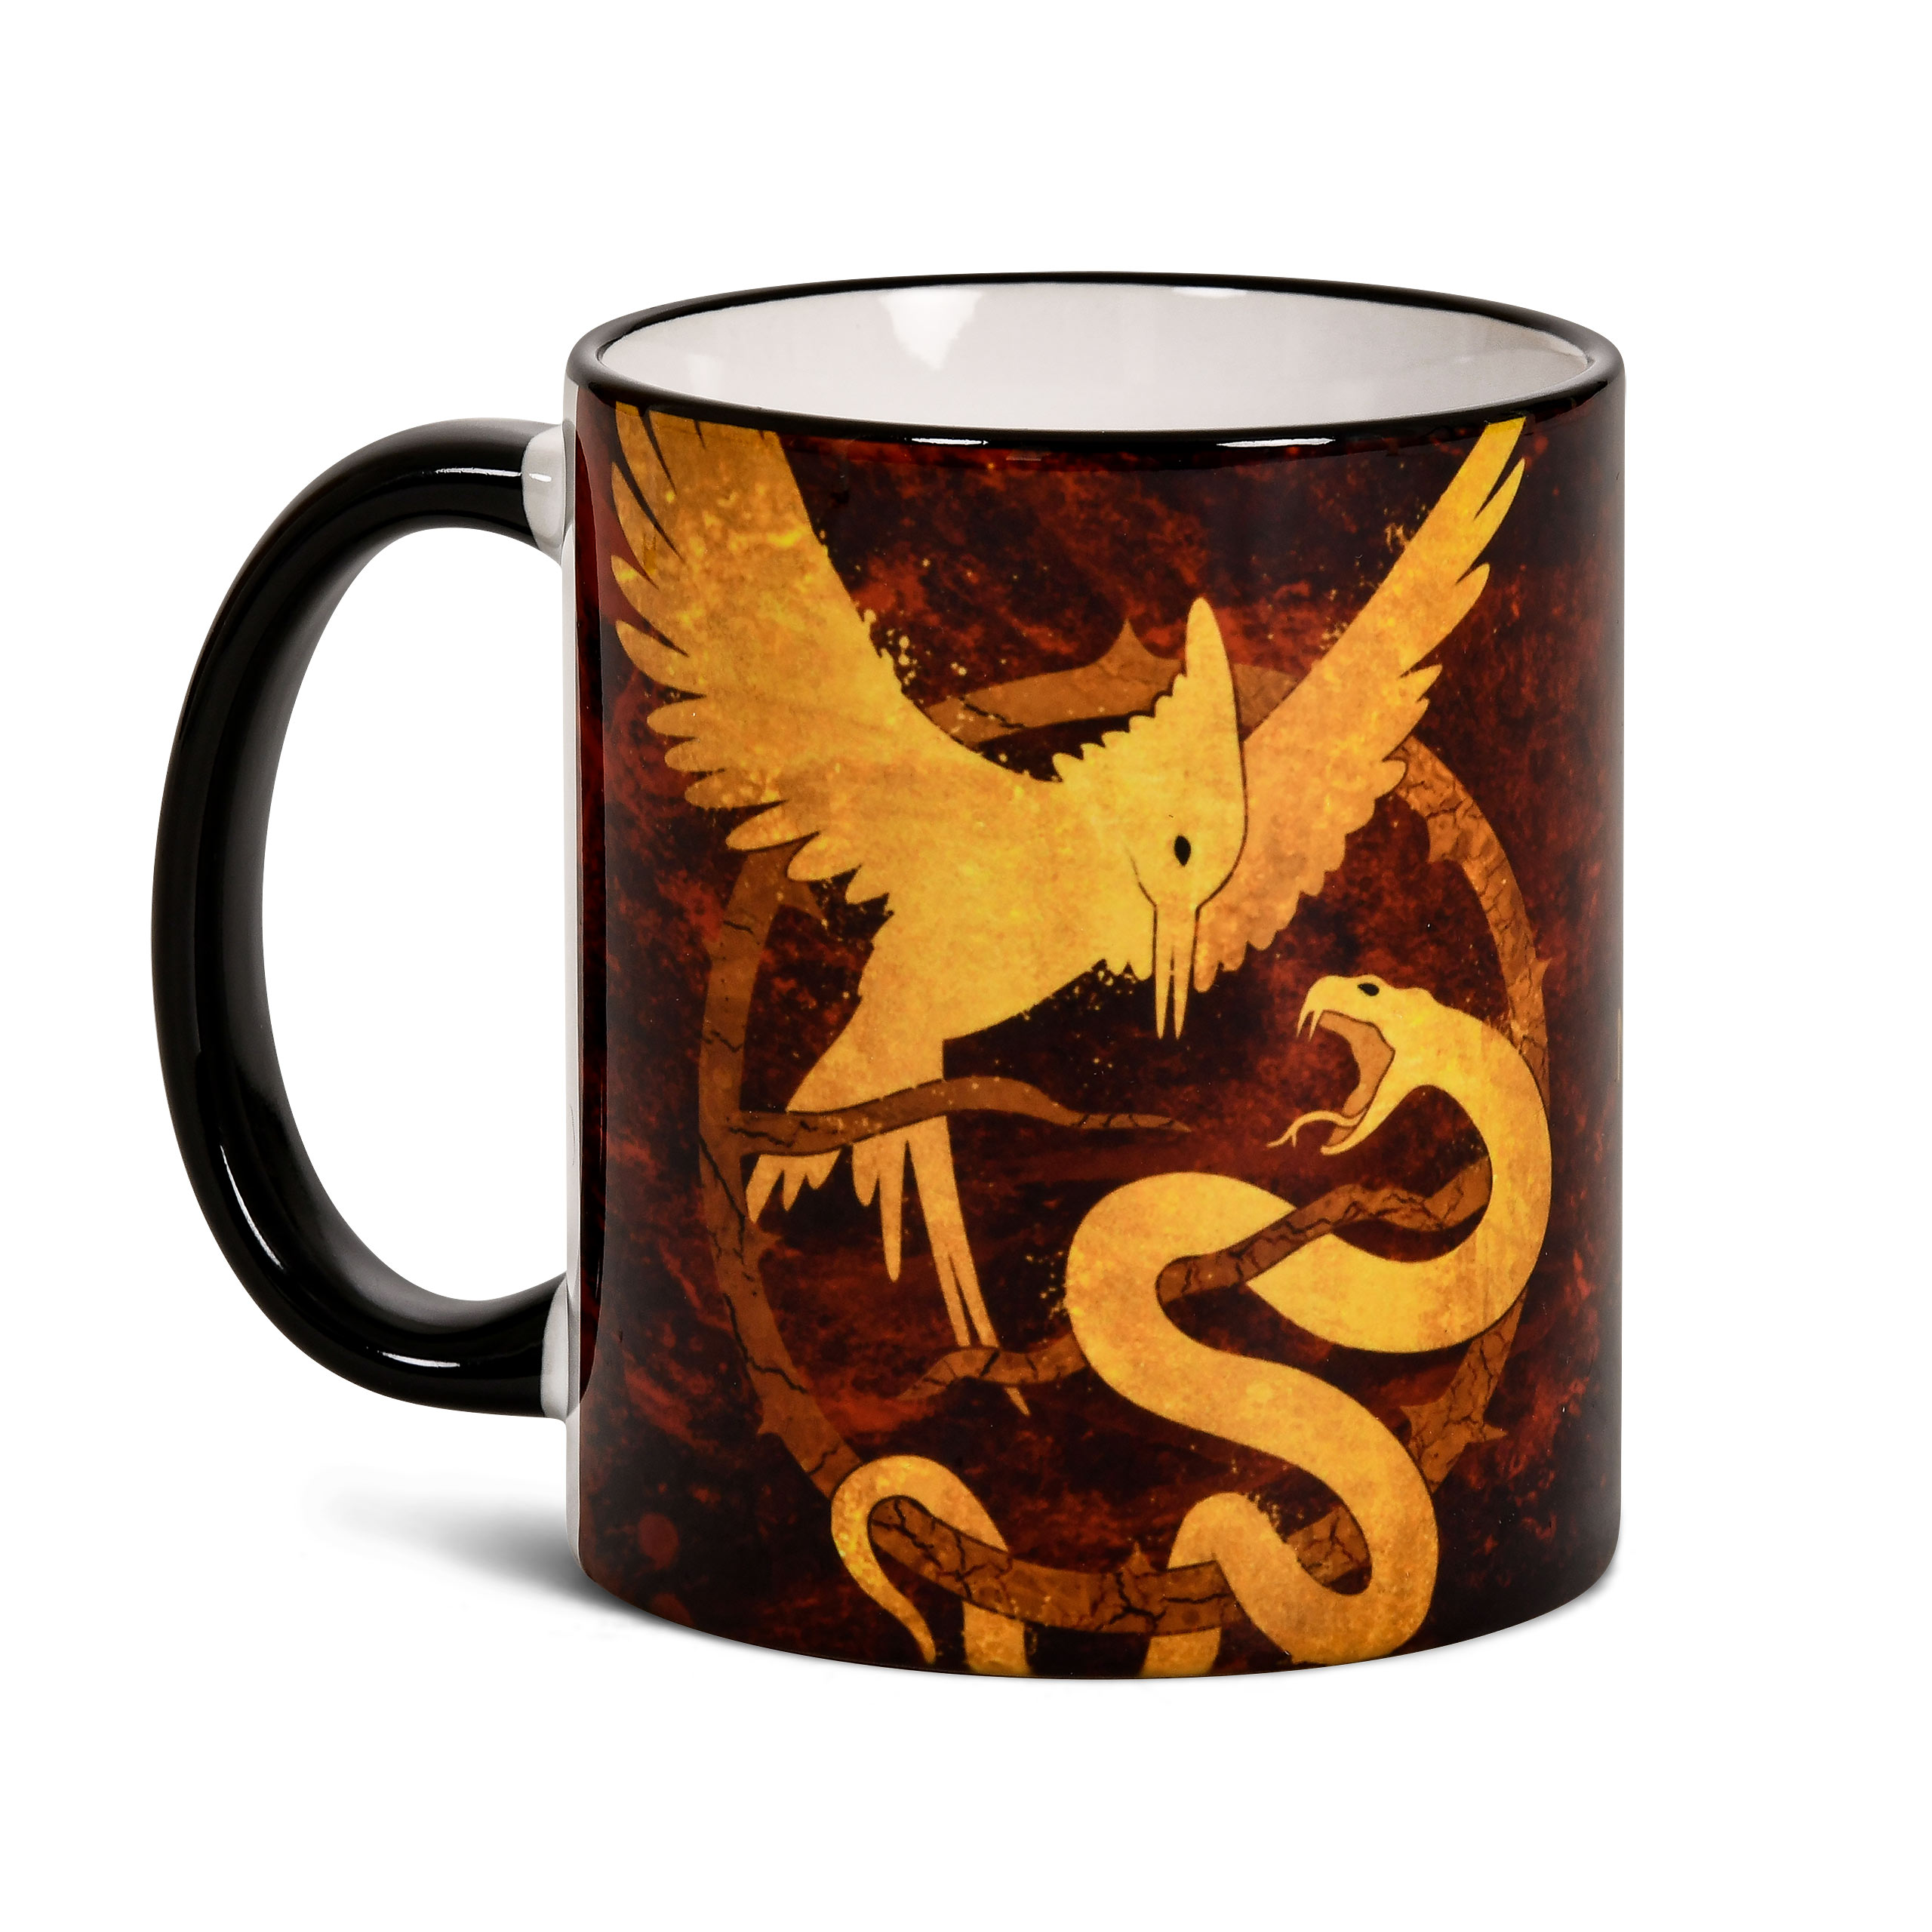 Songbird and Snake Mug for Hunger Games Fans